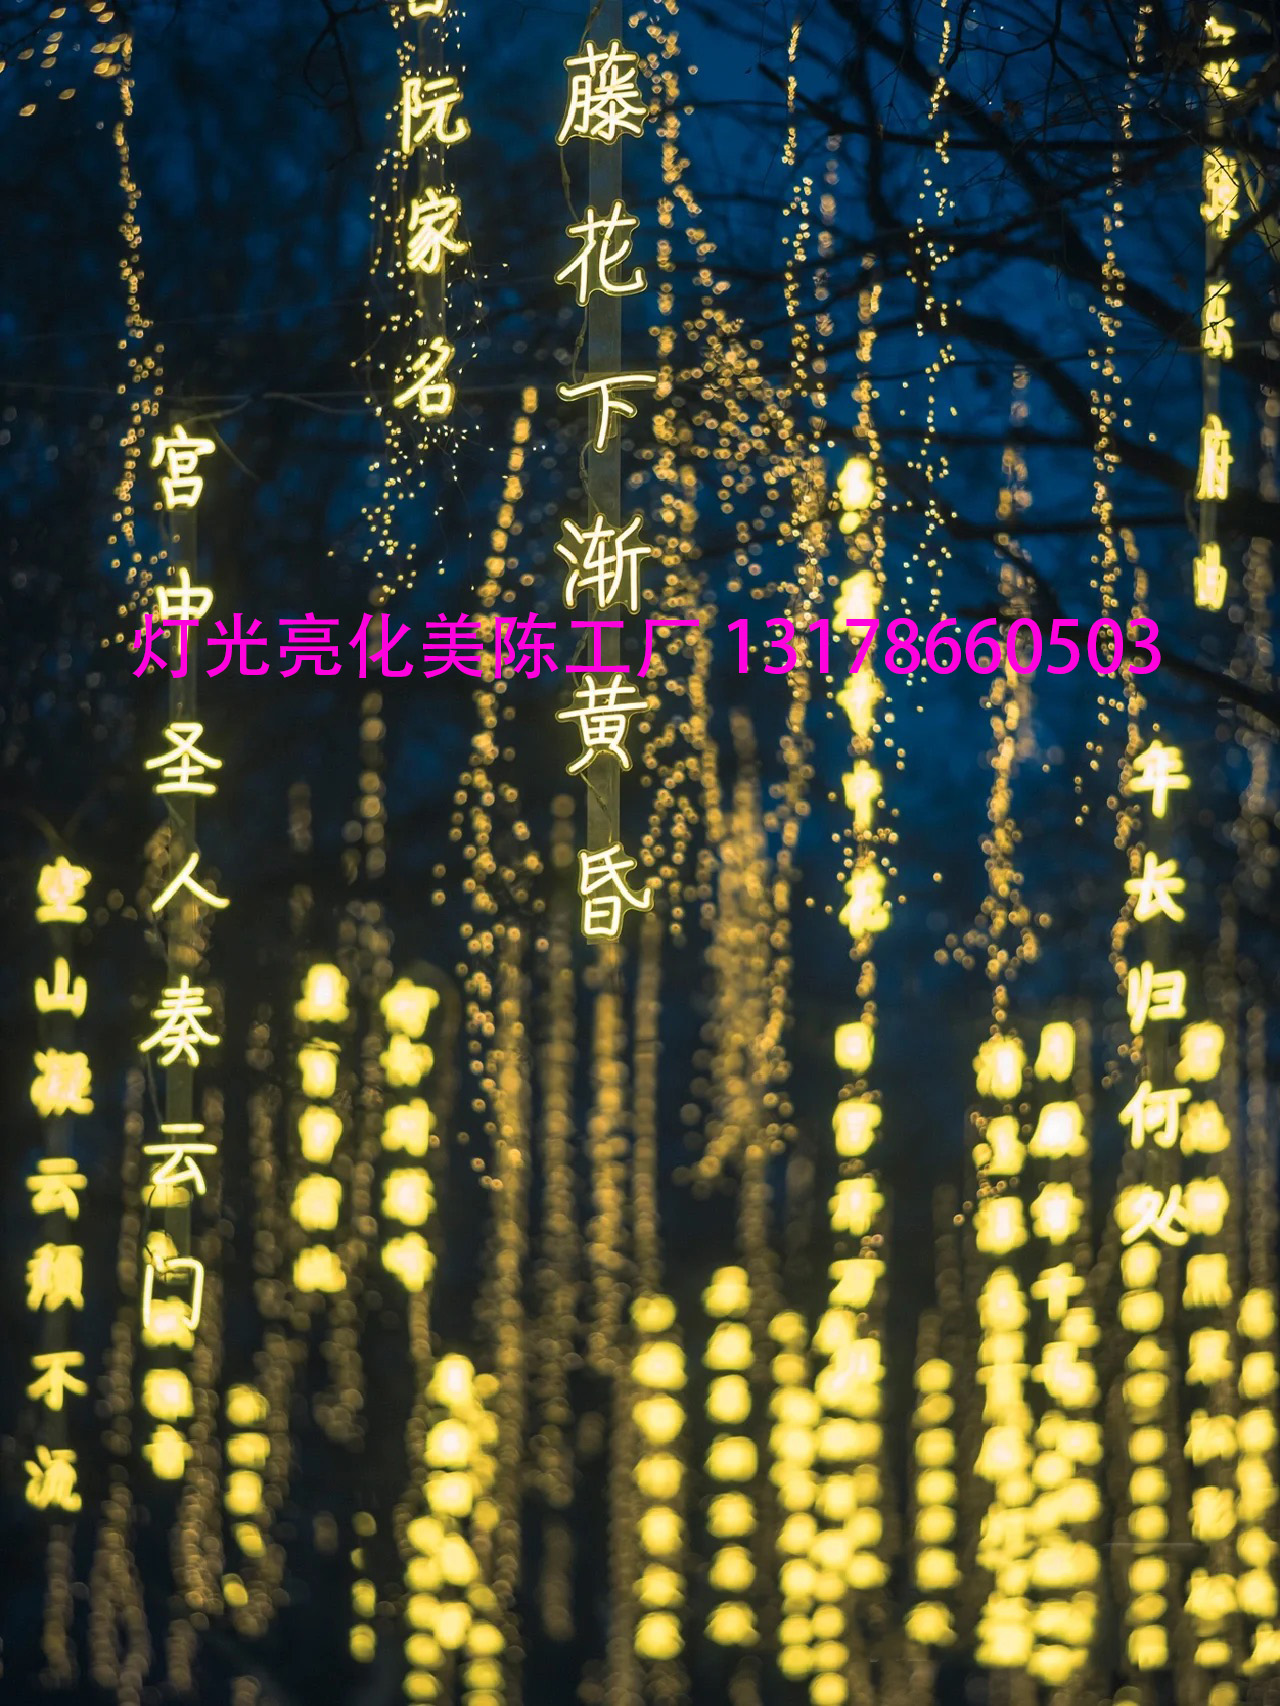 夏桐工厂诗词条幅灯串防水景区公园街道创意挂树上发光字树木亮化景观吊灯